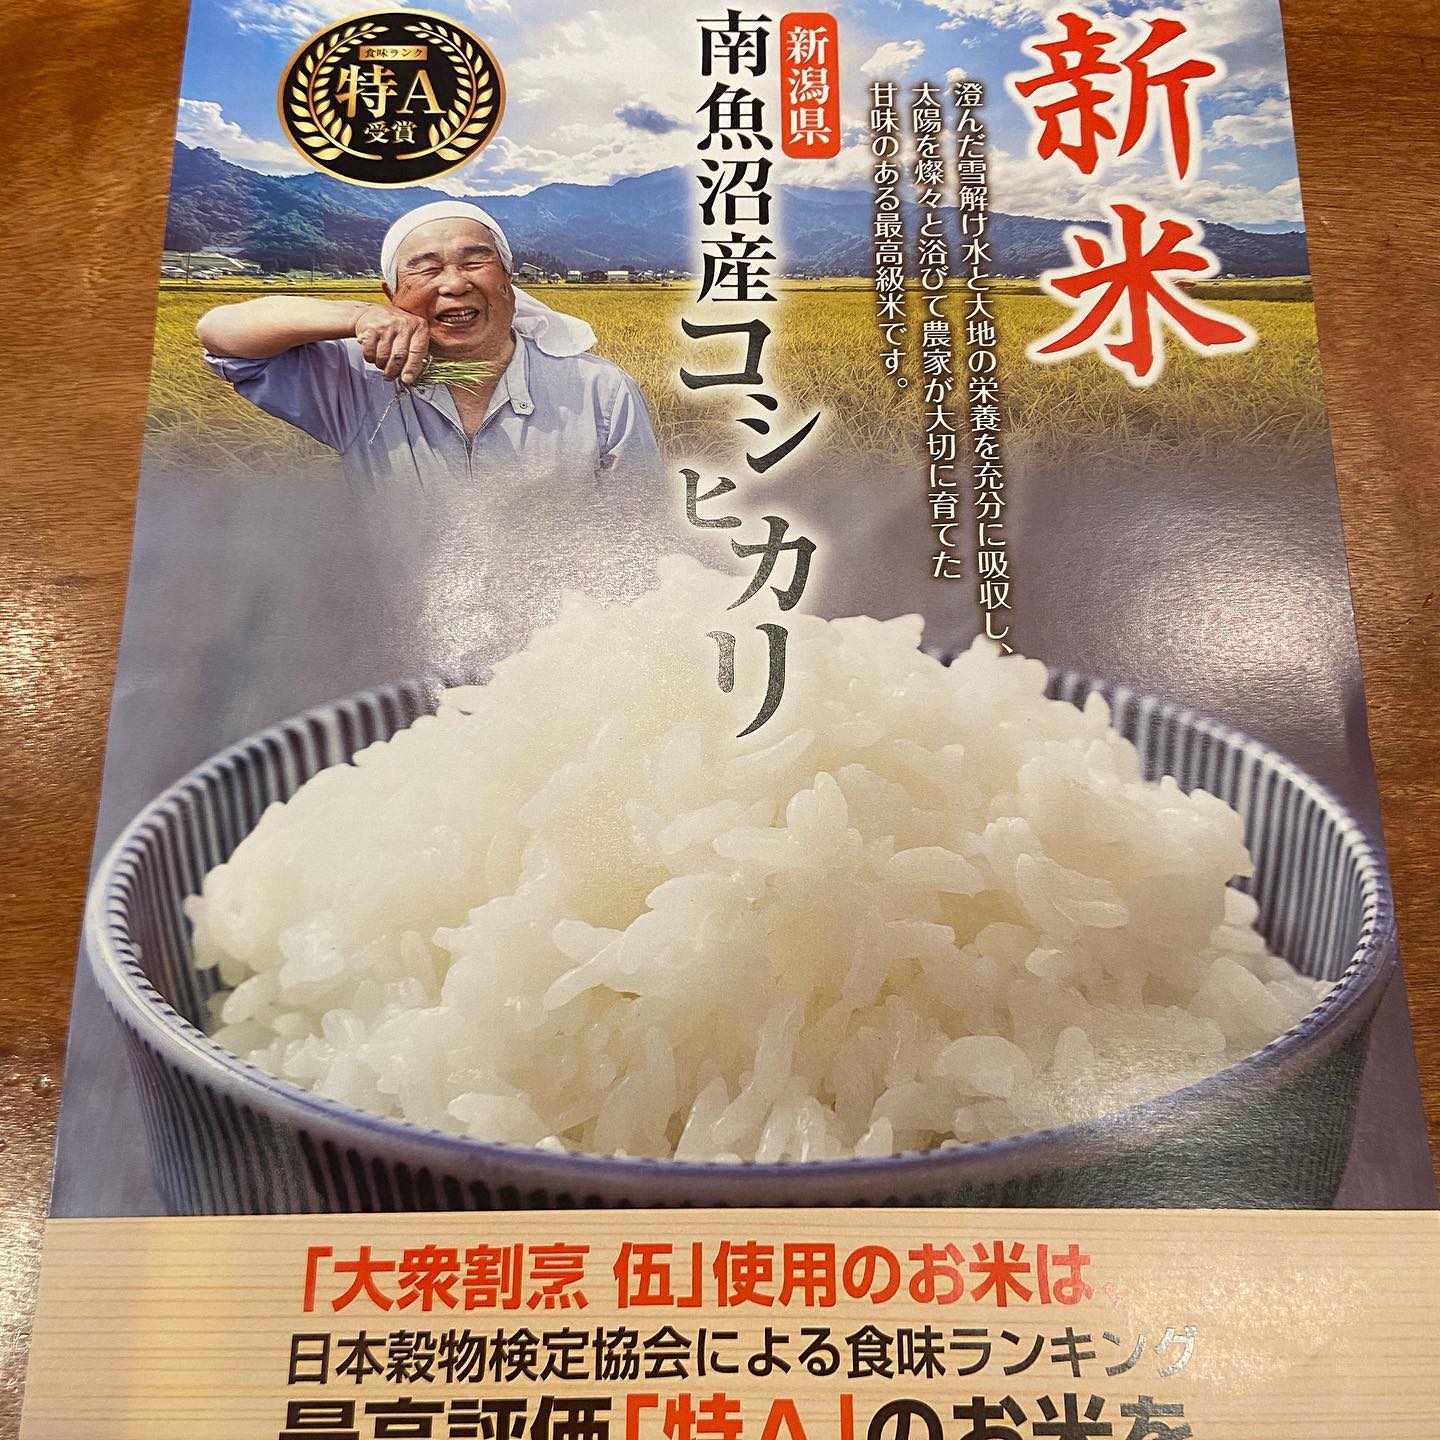 新潟の美味しいお米食べに来てください。